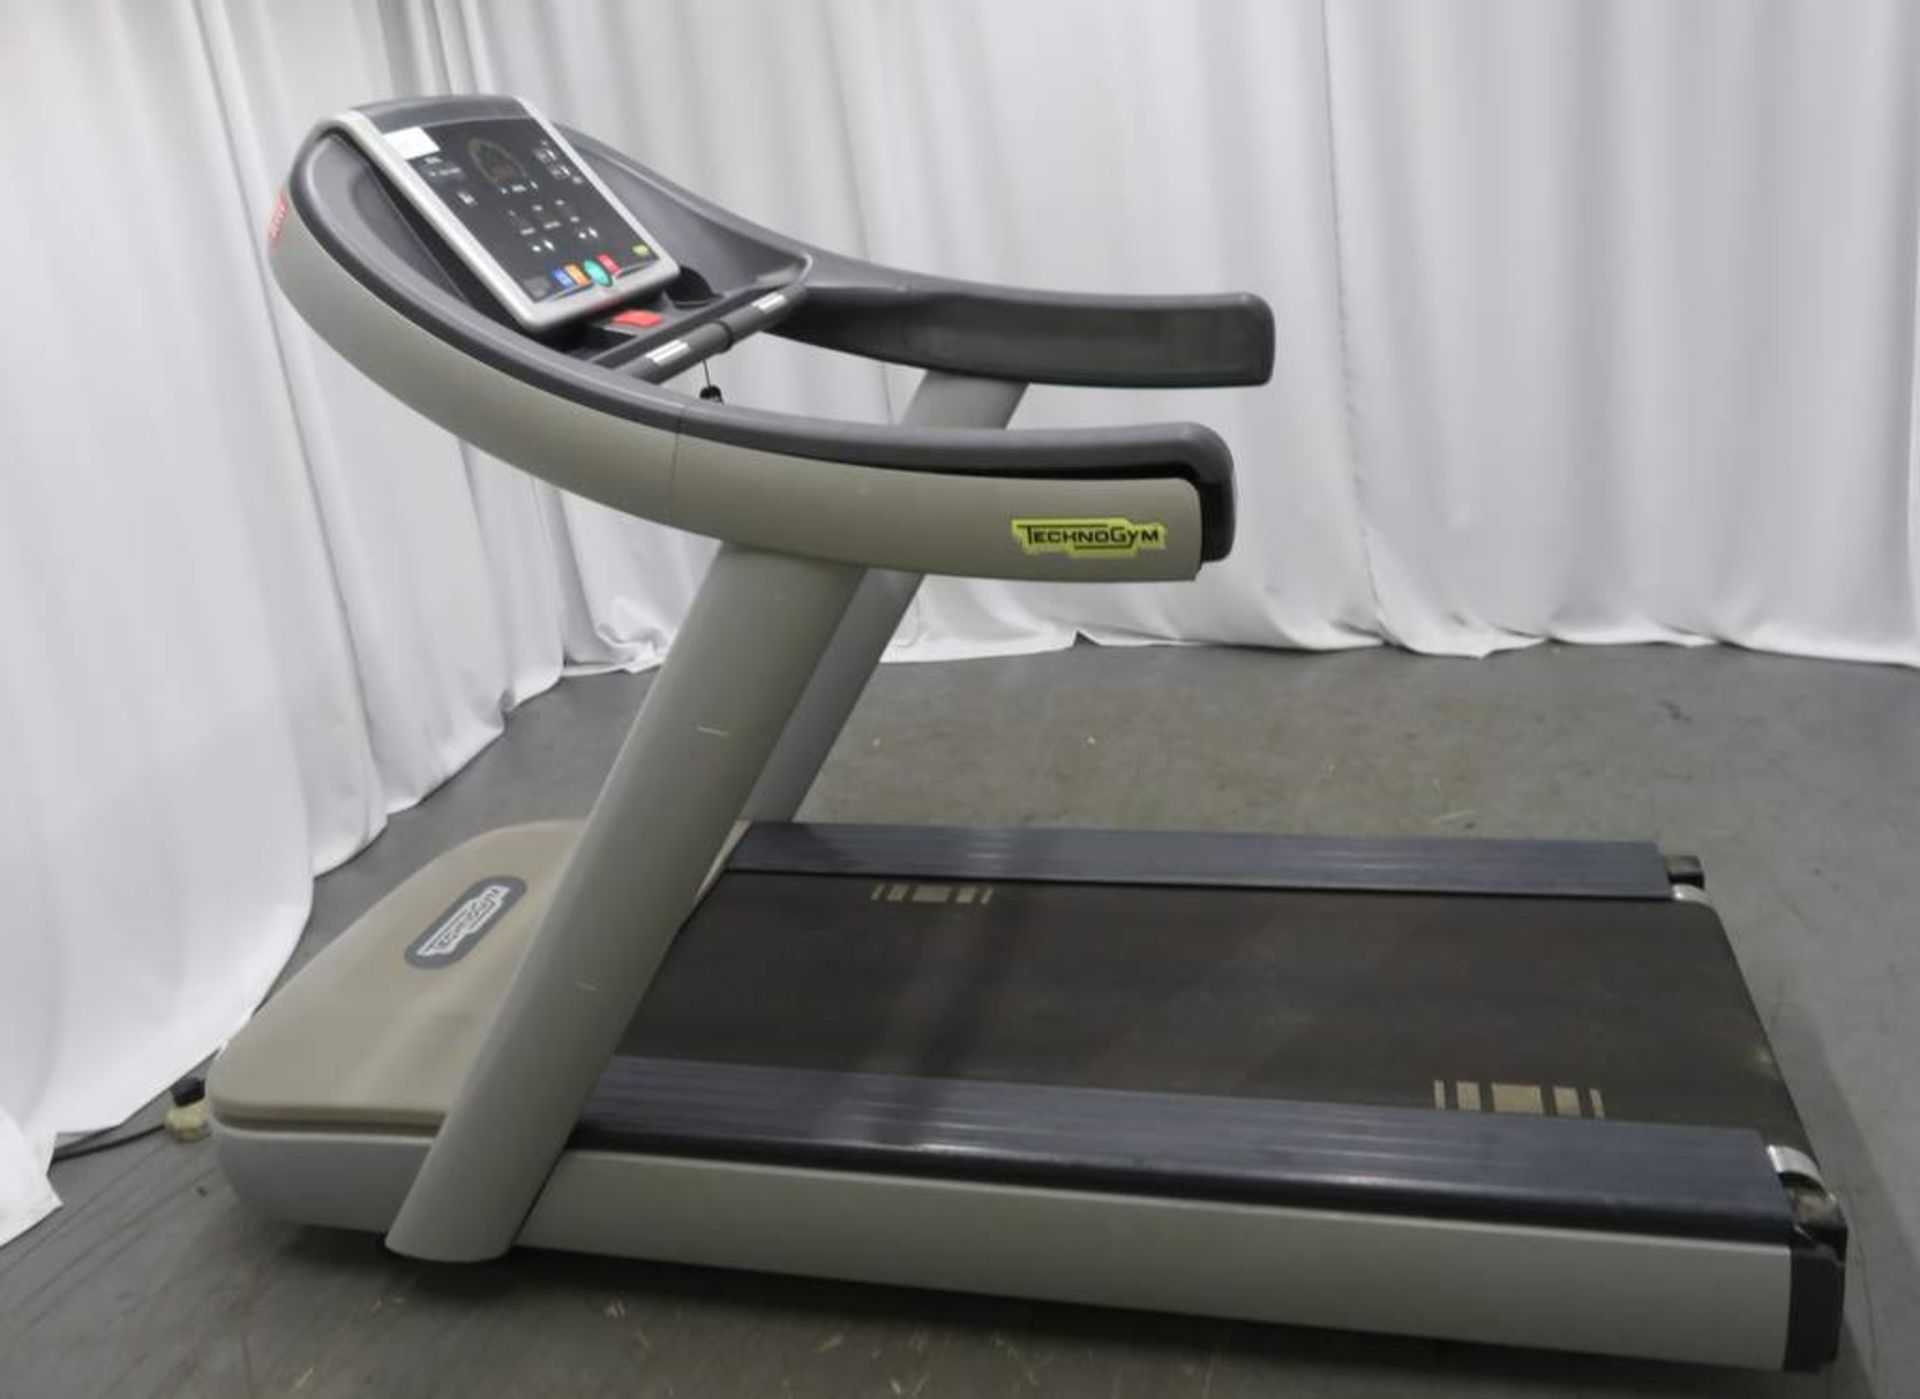 Technogym Model: Run 500 Treadmill. - Image 2 of 6